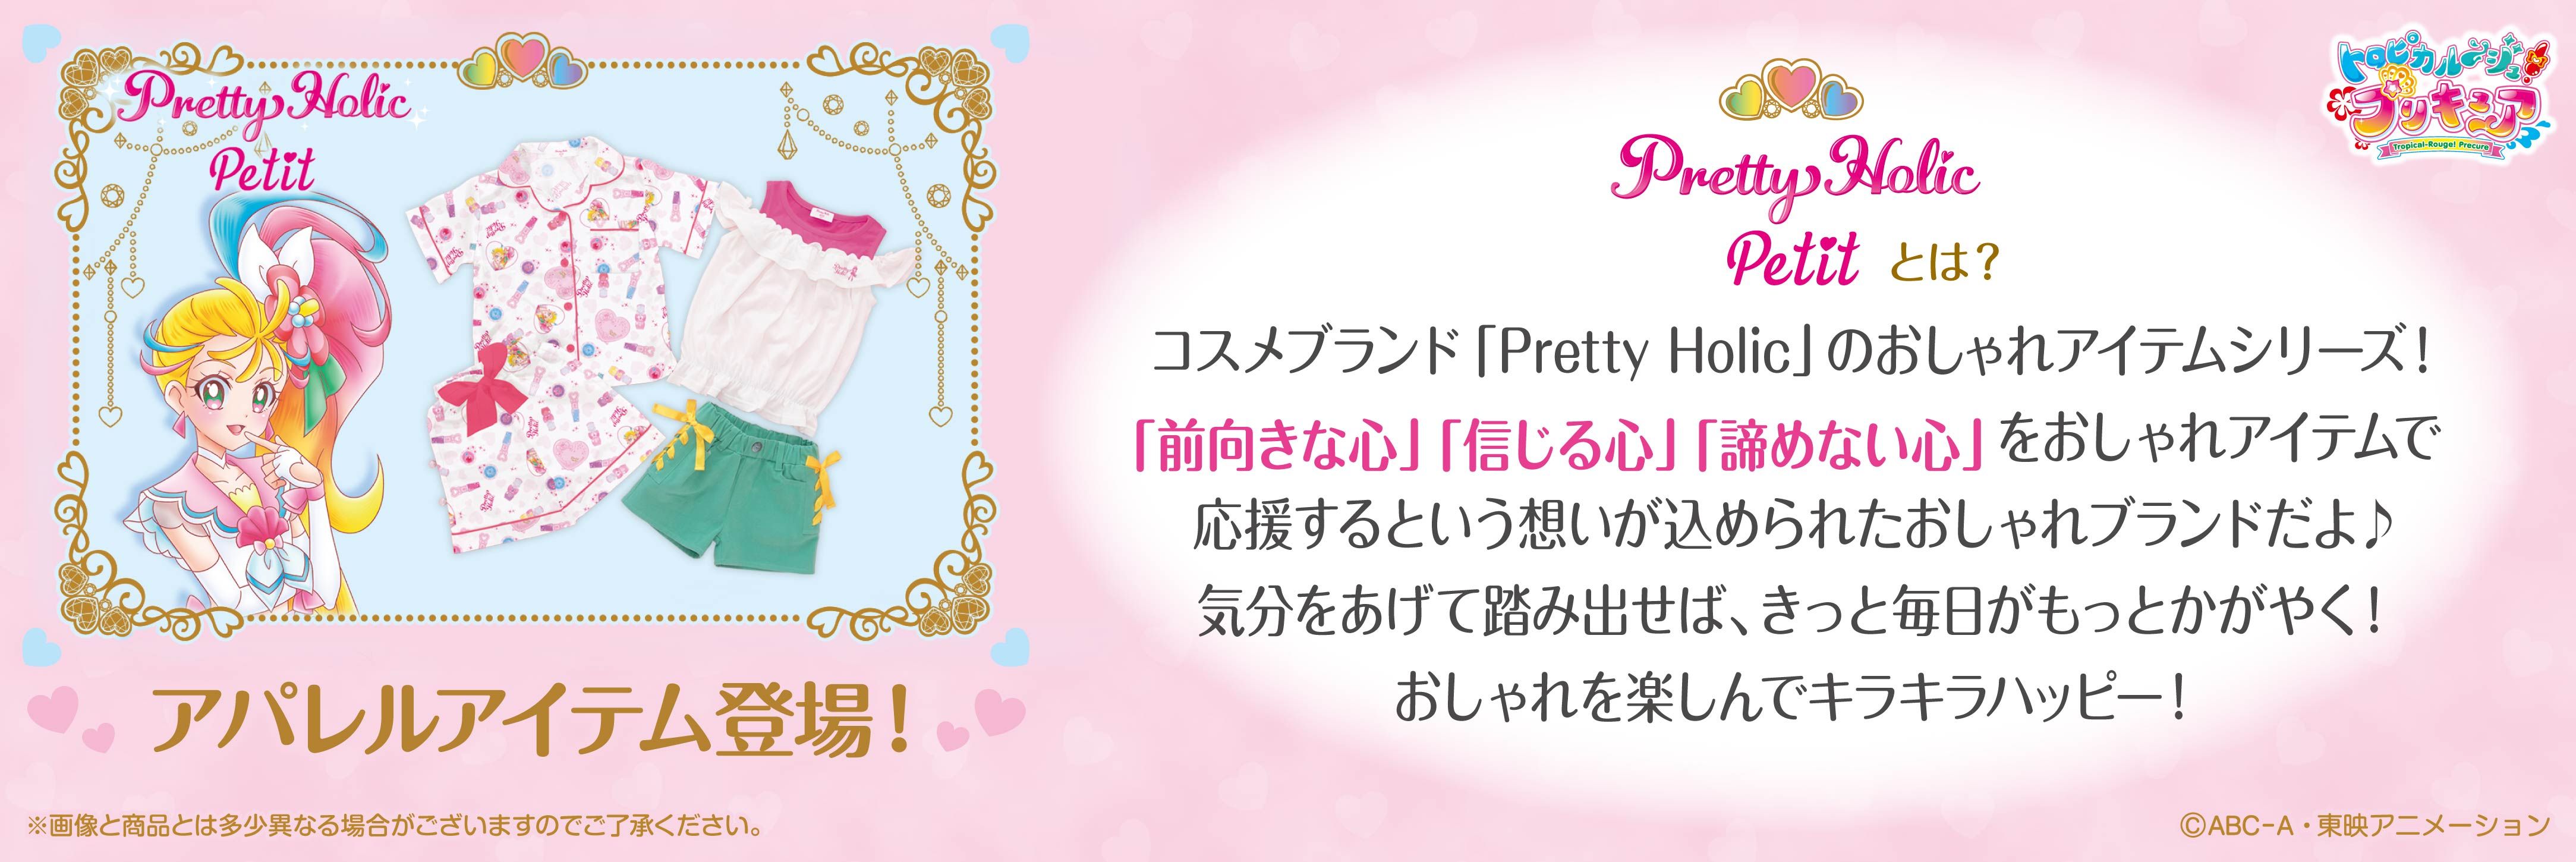 バンダイ アパレル ストア キャラクターから探す Pretty Holic Petit 商品一覧ページ1 バンダイナムコグループ公式通販サイト